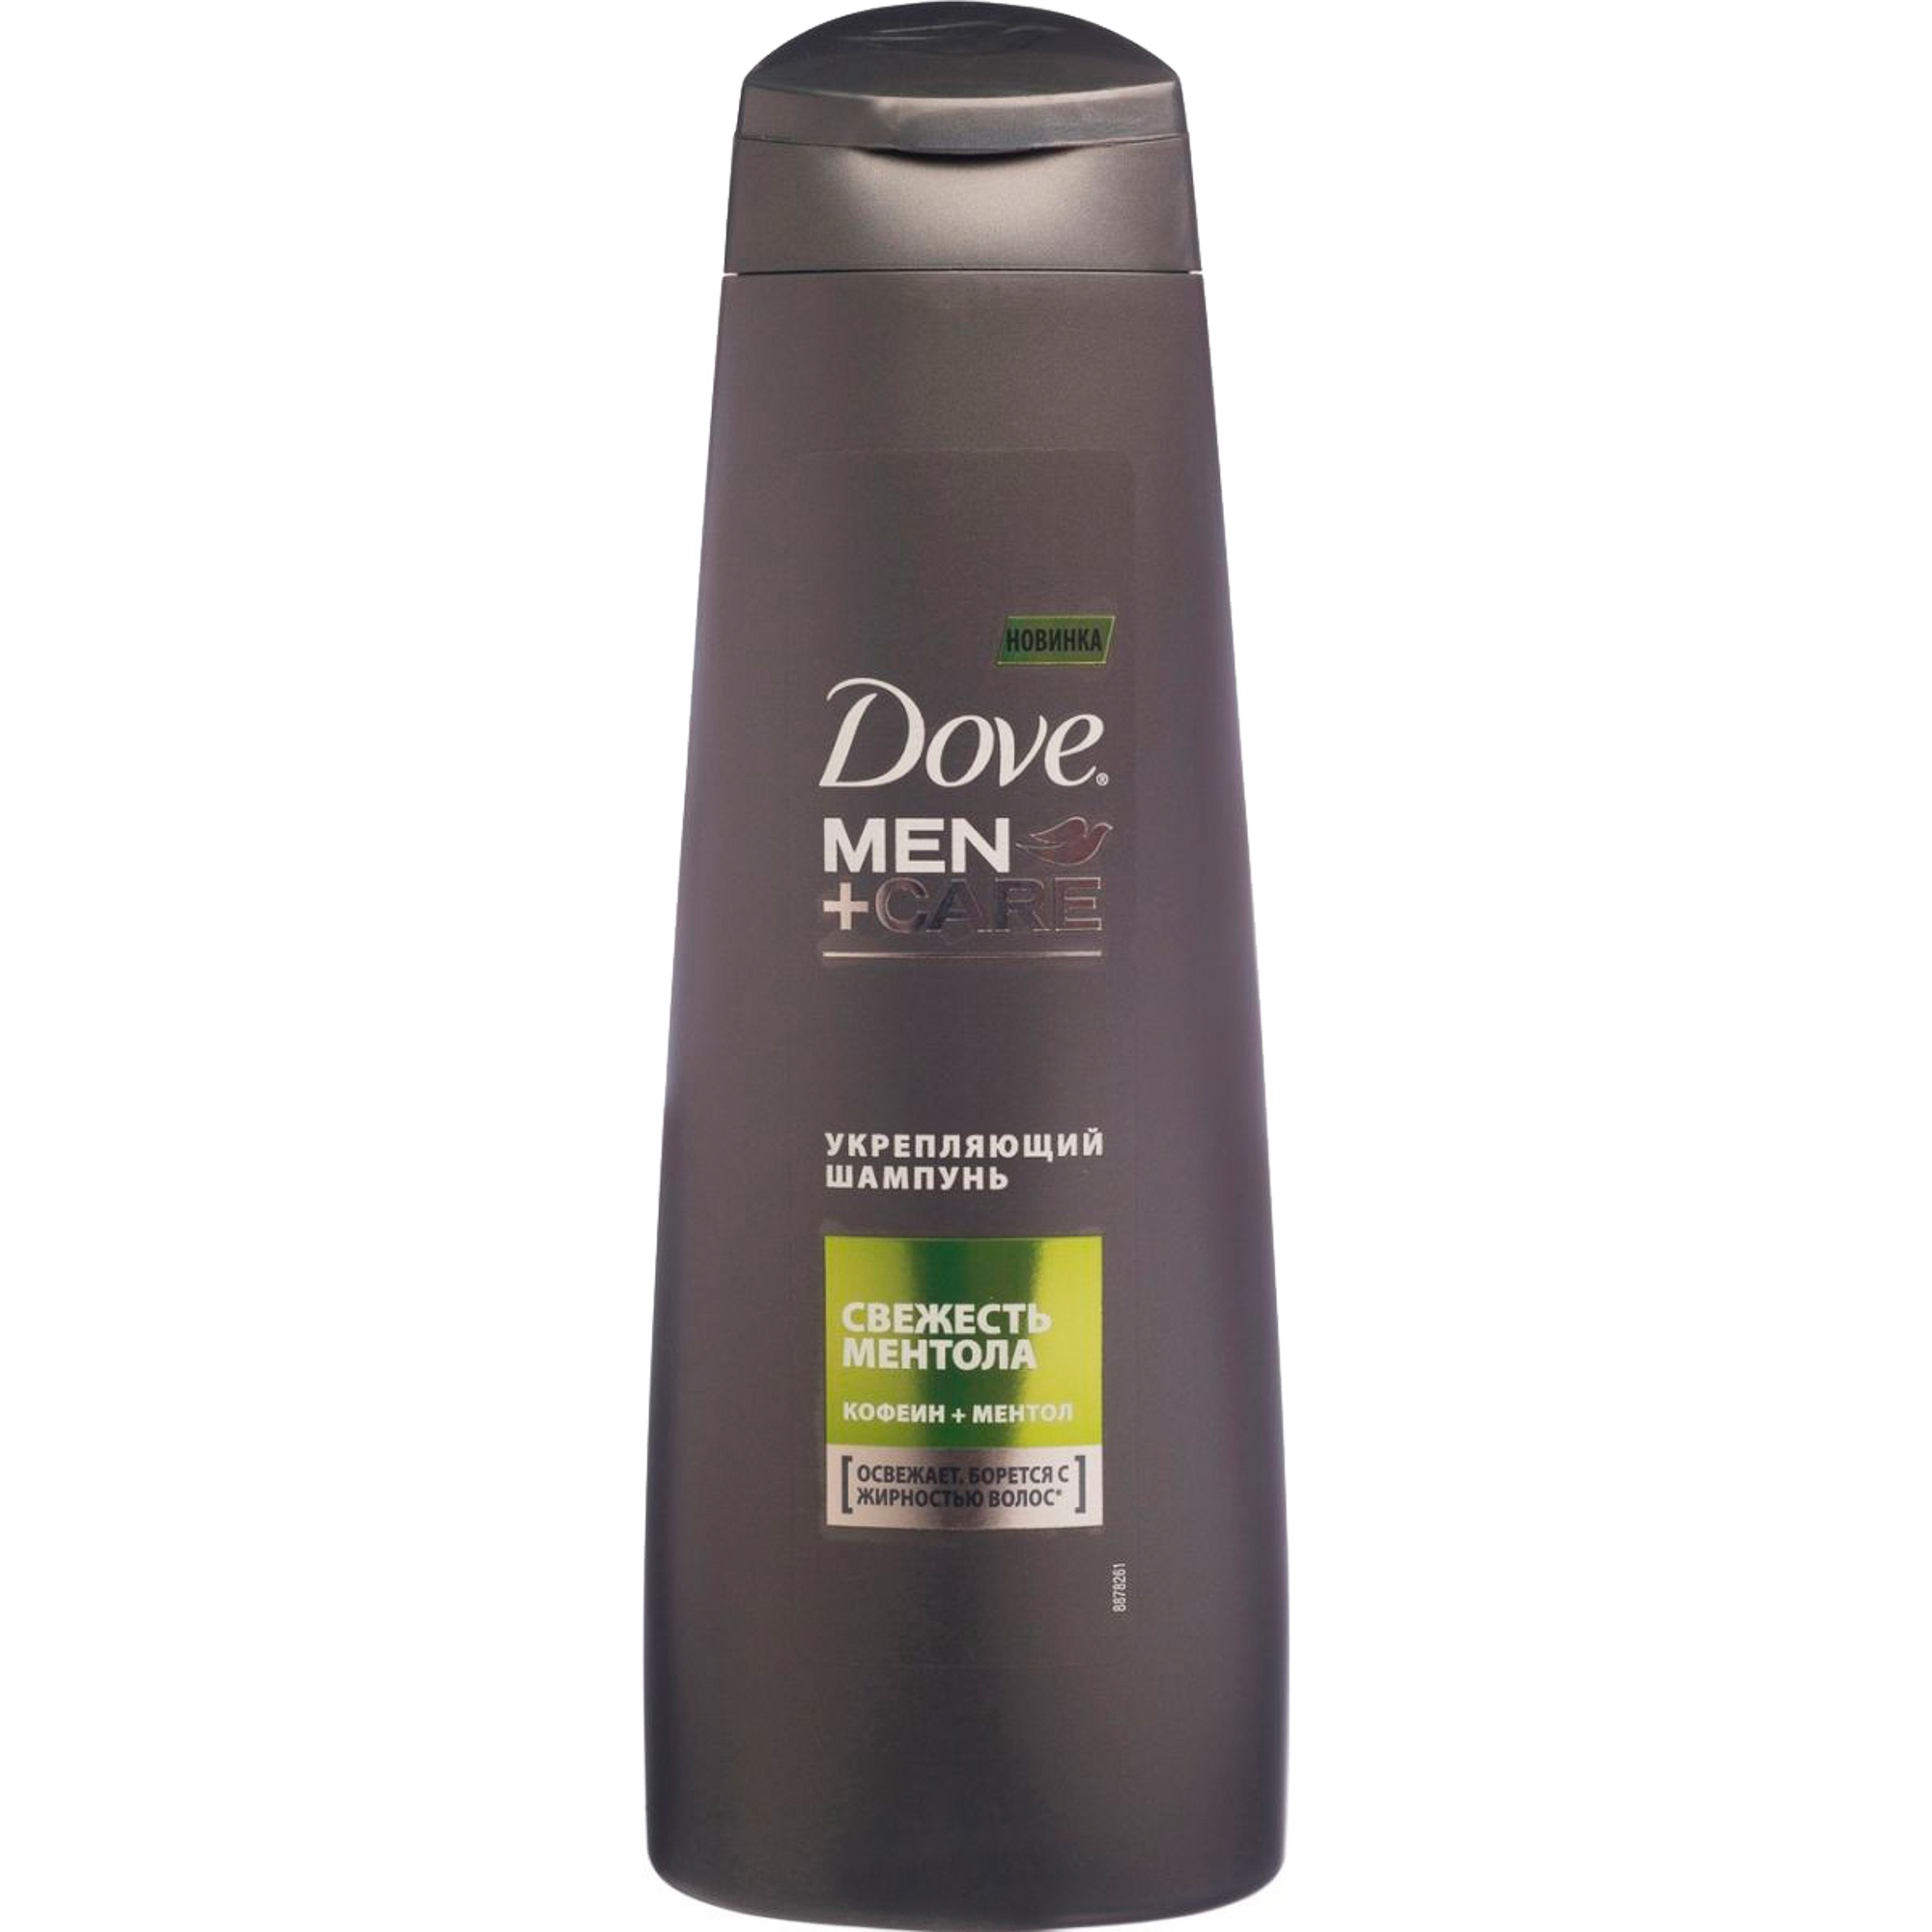 Шампунь Dove Men+Care Укрепляющий Свежесть ментола 250 мл шампунь укрепляющий для ежедневного применения 300 г